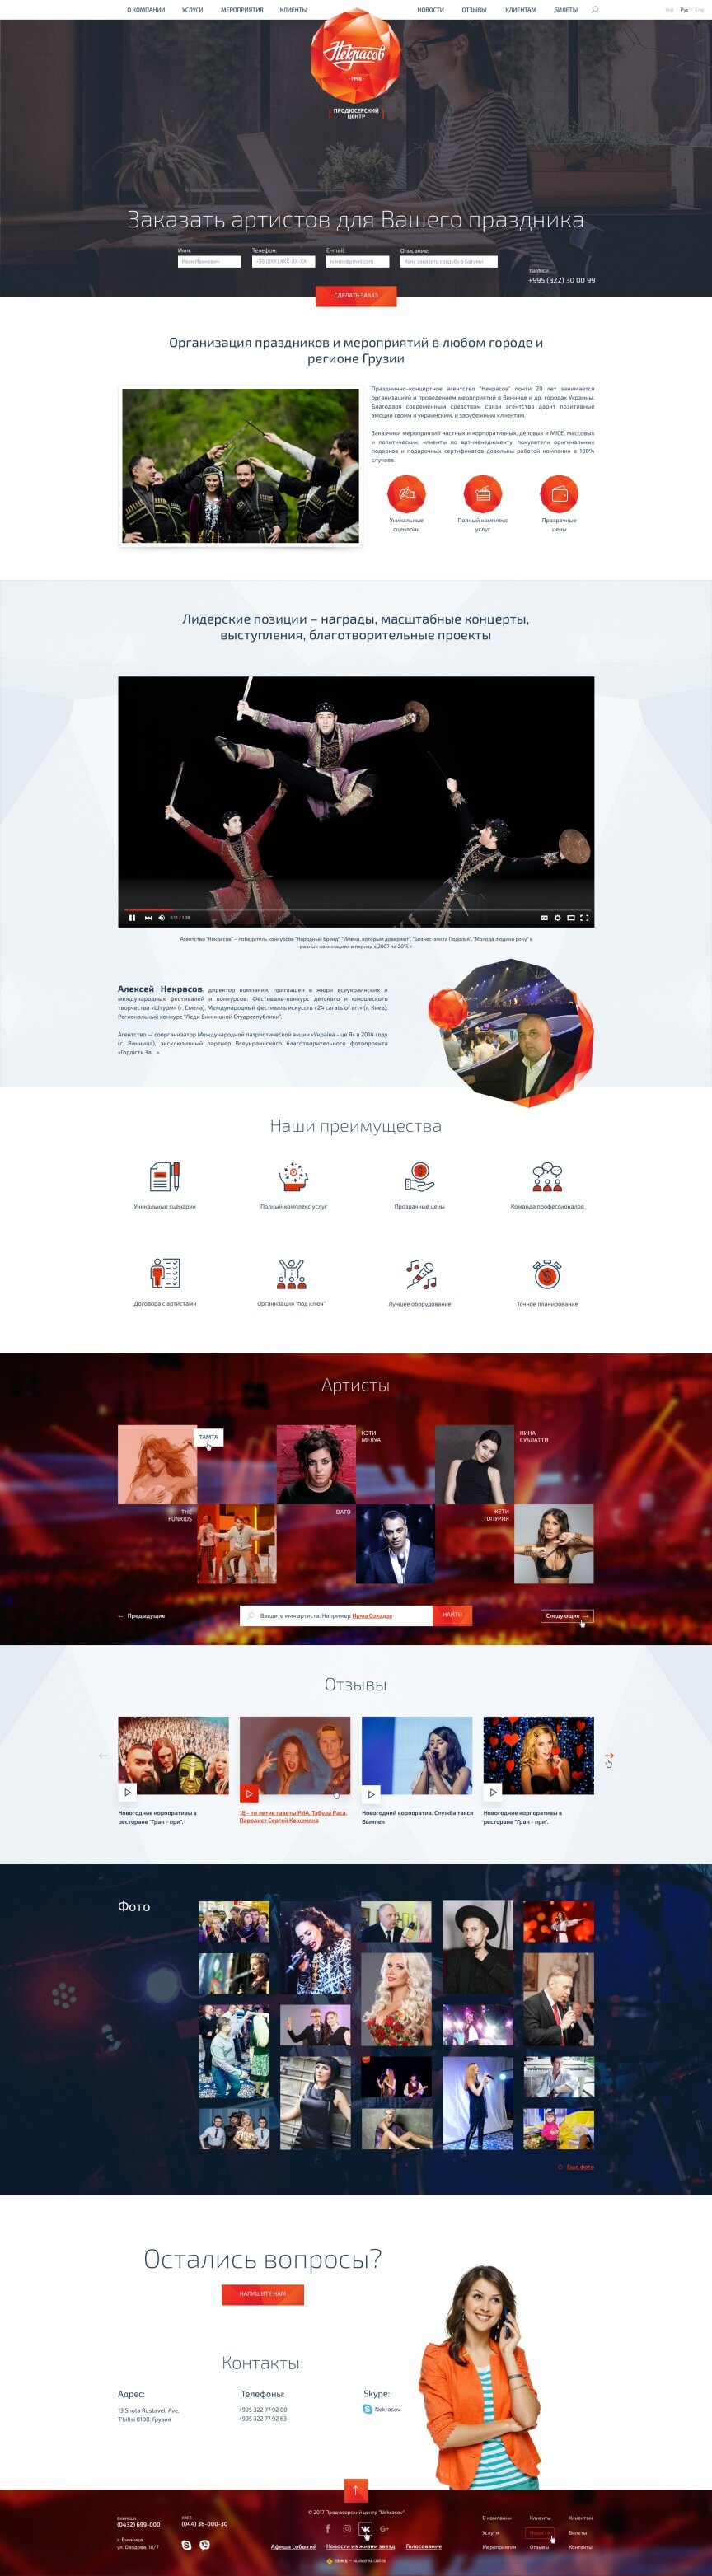 дизайн внутрішніх сторінкок на тему Бізнес і компанії — Сайт продюсерського центру Некрасов 14